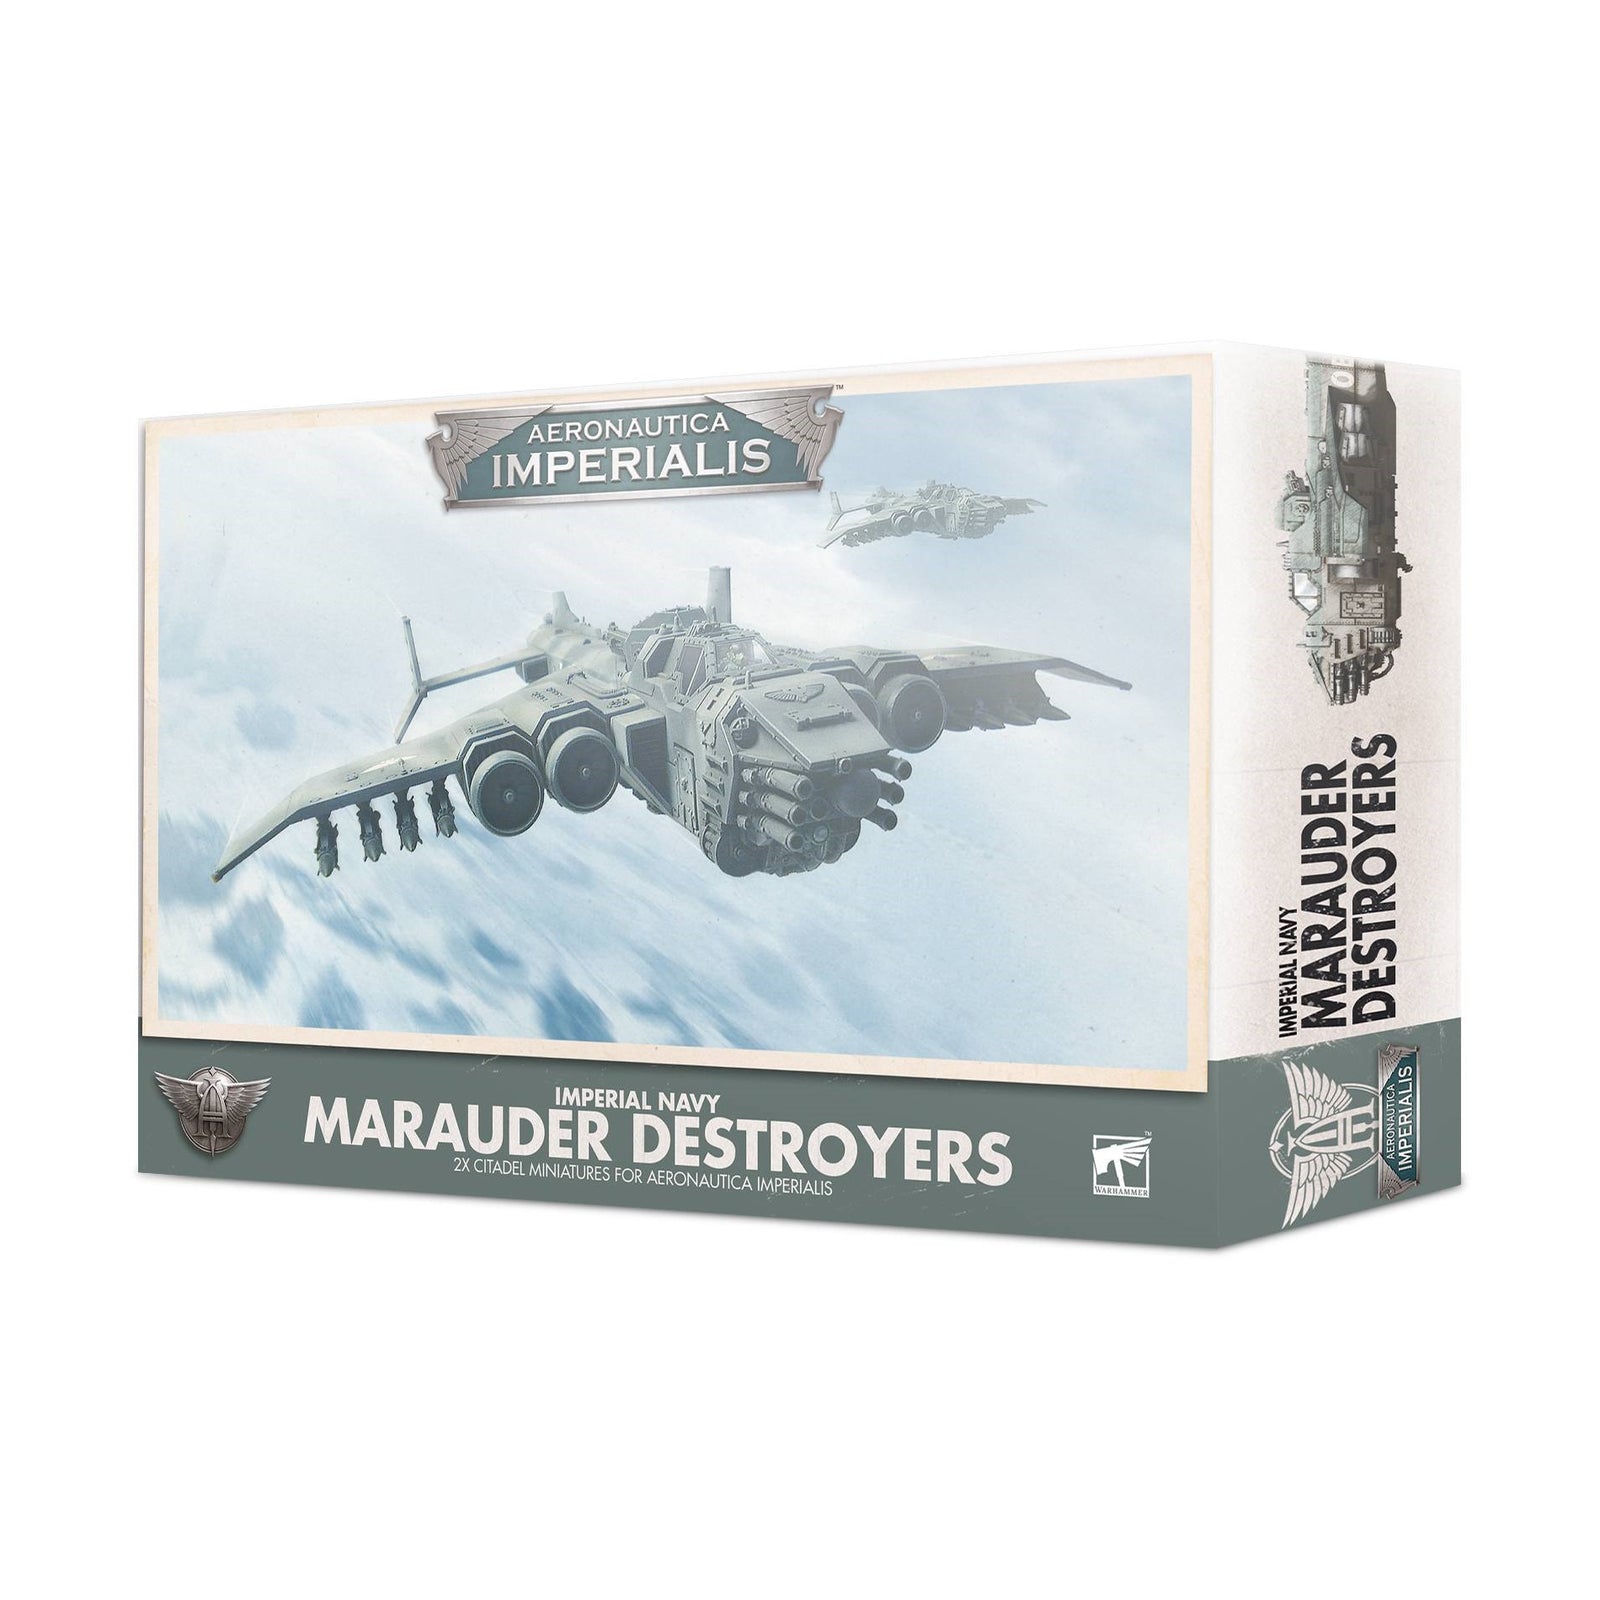 Marauder Destroyers